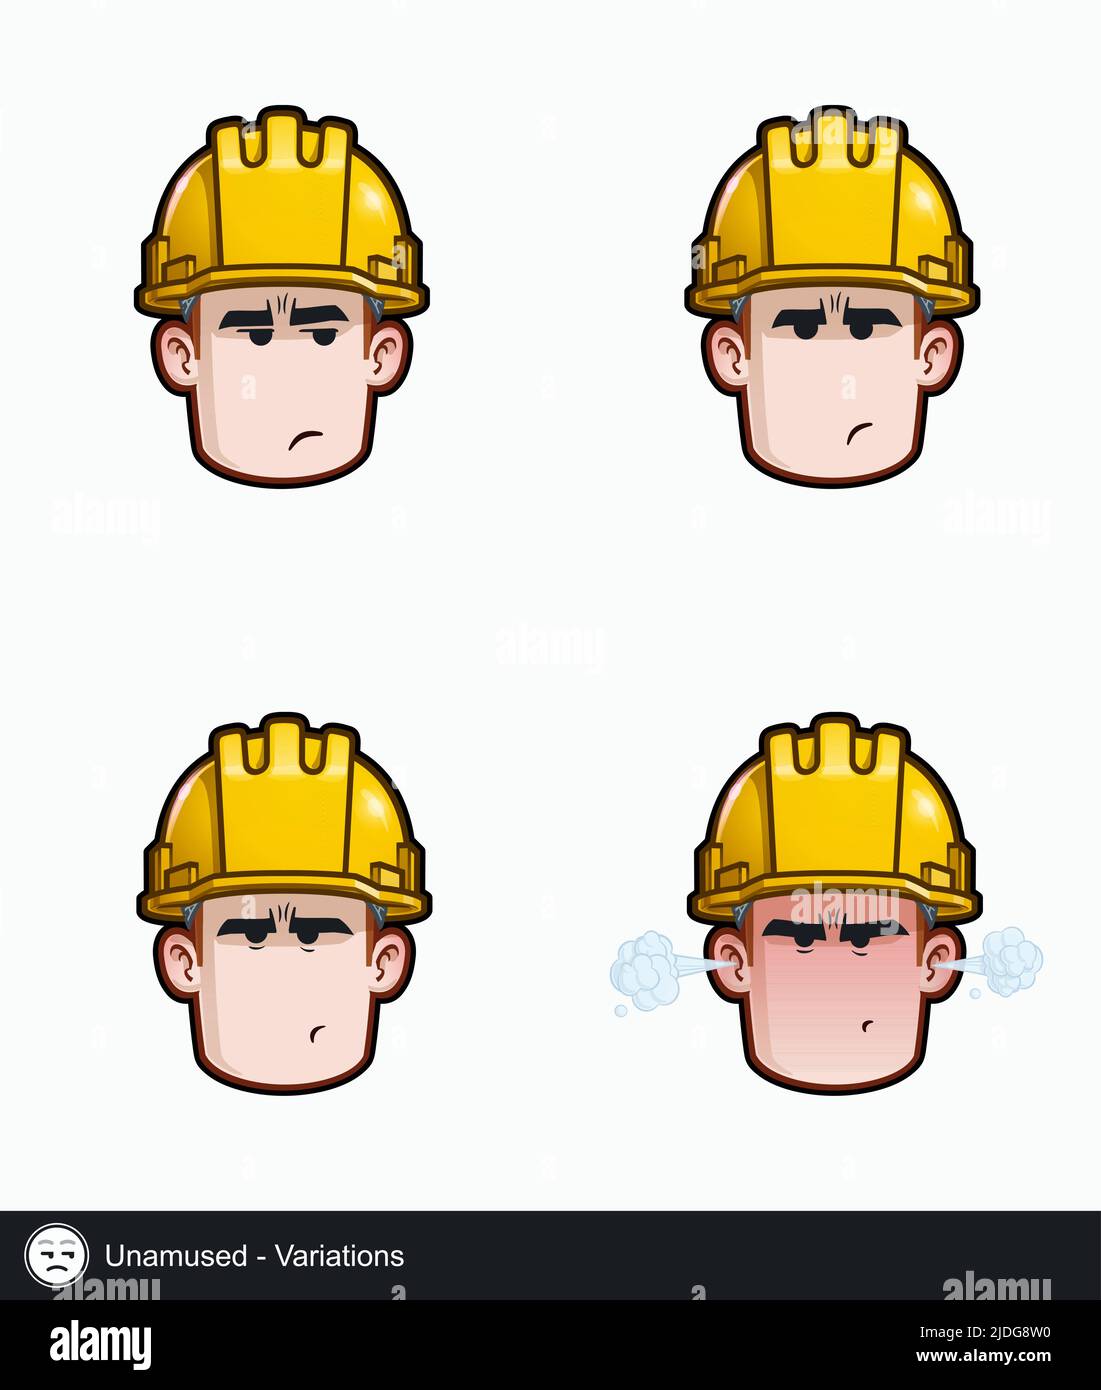 Icon-Set eines Bauarbeiters mit unamüsanten Variationen des emotionalen Ausdrucks. Alle Elemente übersichtlich auf gut beschriebenen Ebenen und Gruppen. Stock Vektor